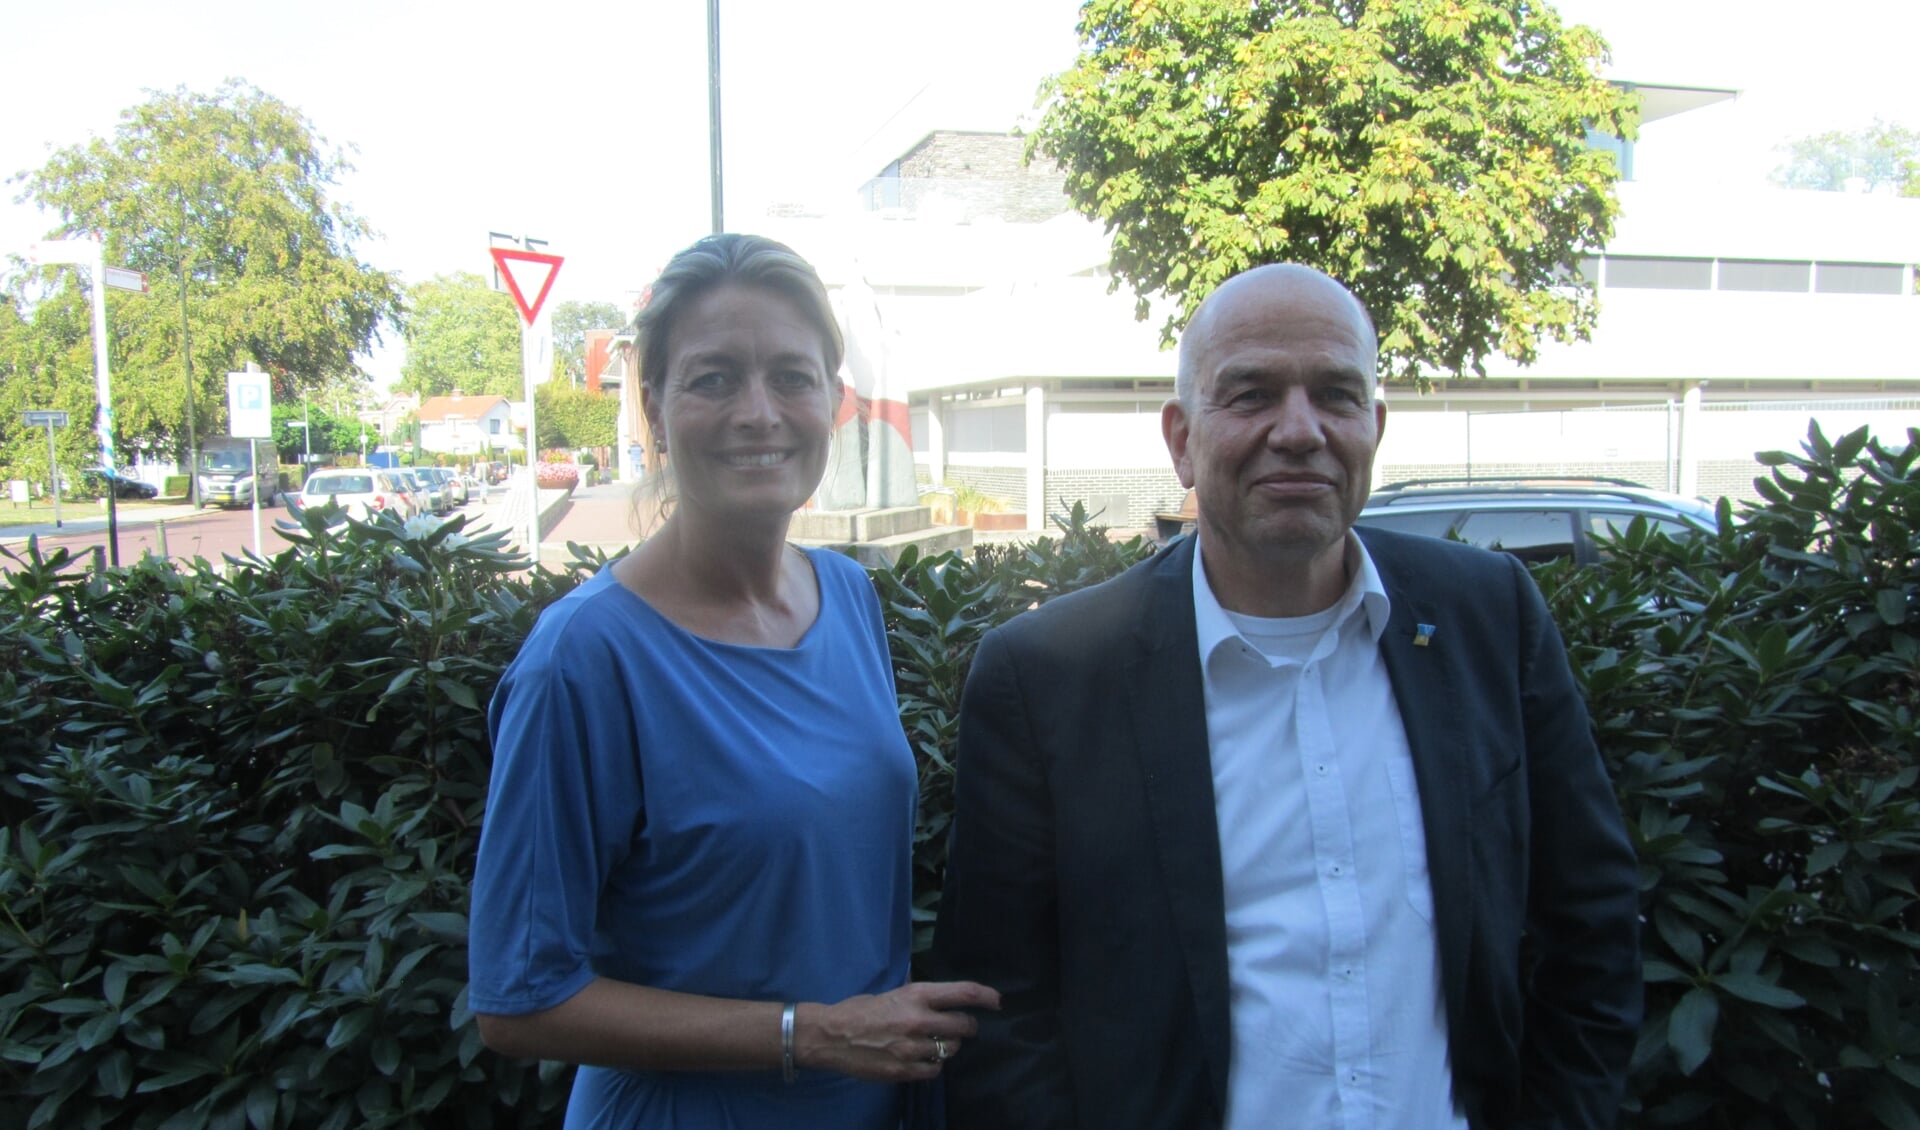 De wethouders Ilse Saris en Wim Aalderink willen armoede in Winterswijk echt aanpakken. Foto: Bernhard Harfsterkamp